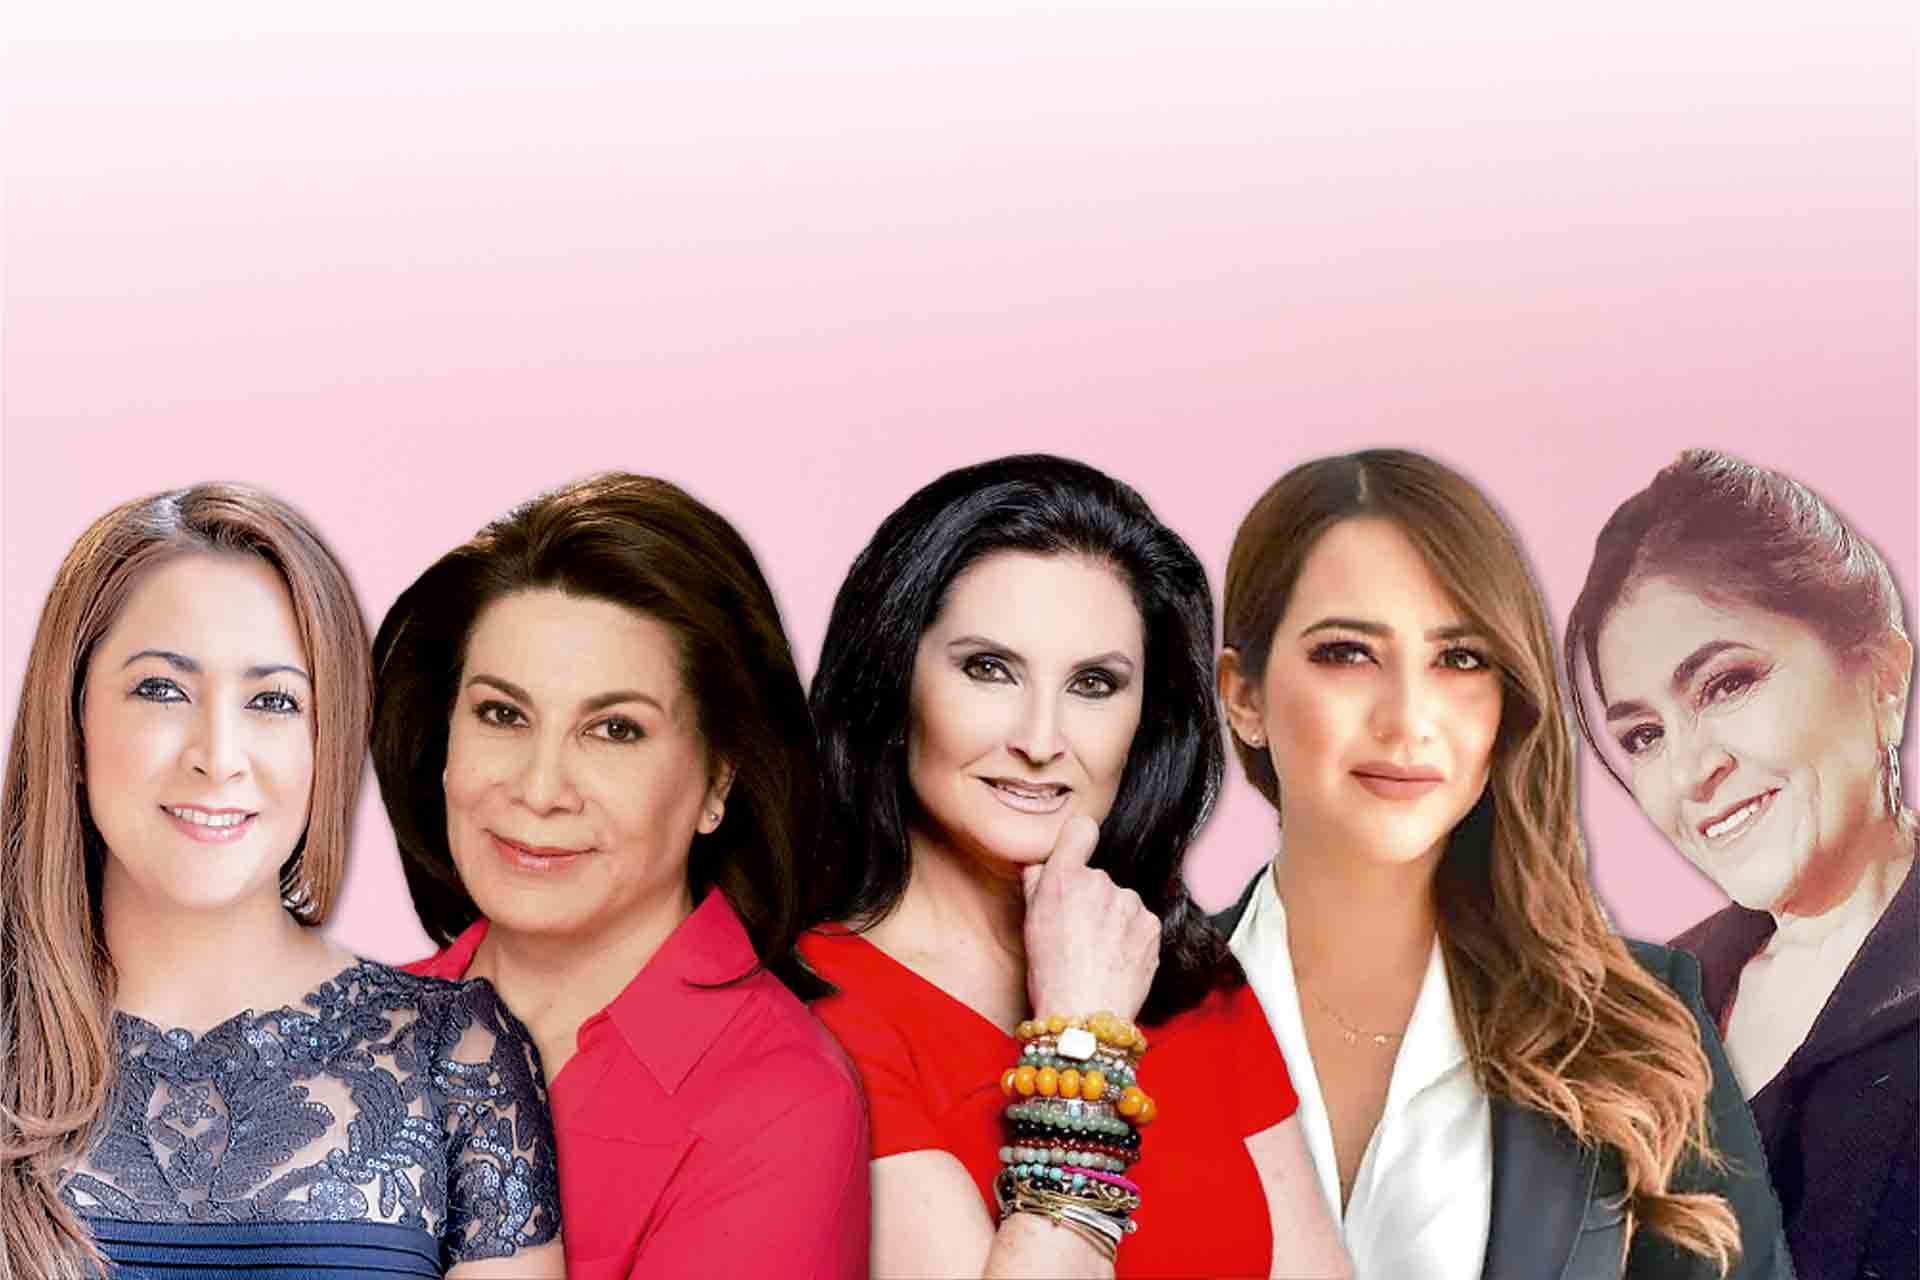 Tere Jiménez, Lorena Martínez, Blanquita Rivera Rio, Karla Espinoza y Nora Ruvalcaba.